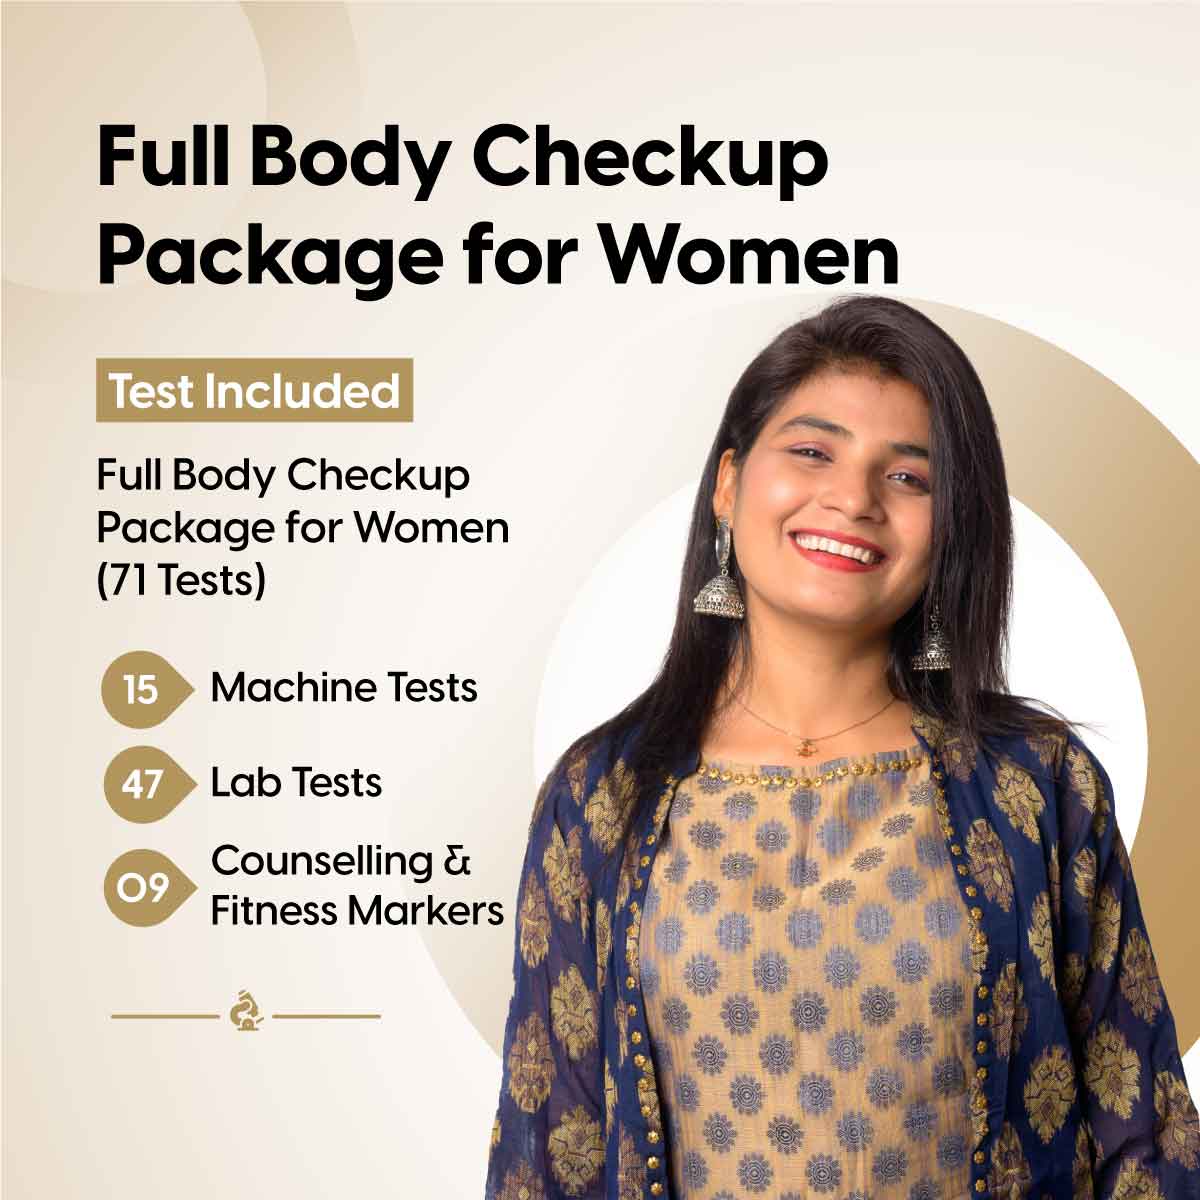 Full Body Checkup Package for Women